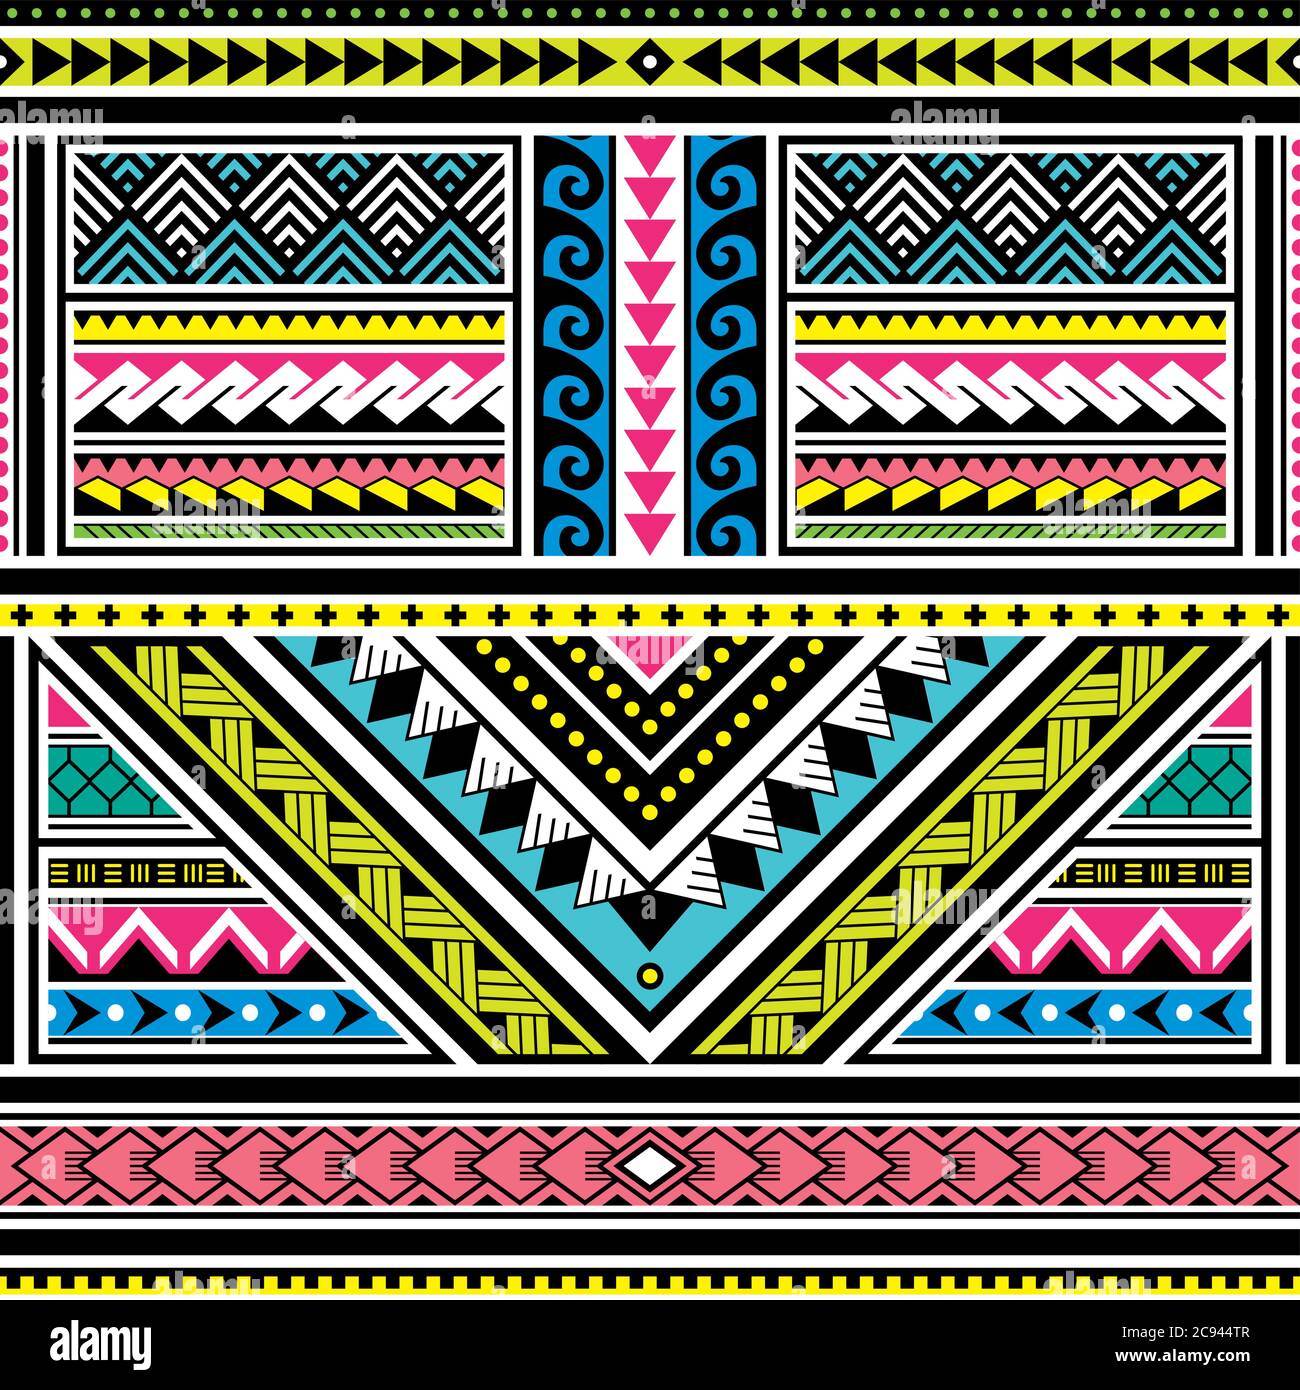 Tatuaggio polinesiano motivo colorato vettoriale senza giunture, design tribale hawaiano ispirato all'arte geometrica tradizionale delle isole sull'Oceano Pacifico Illustrazione Vettoriale